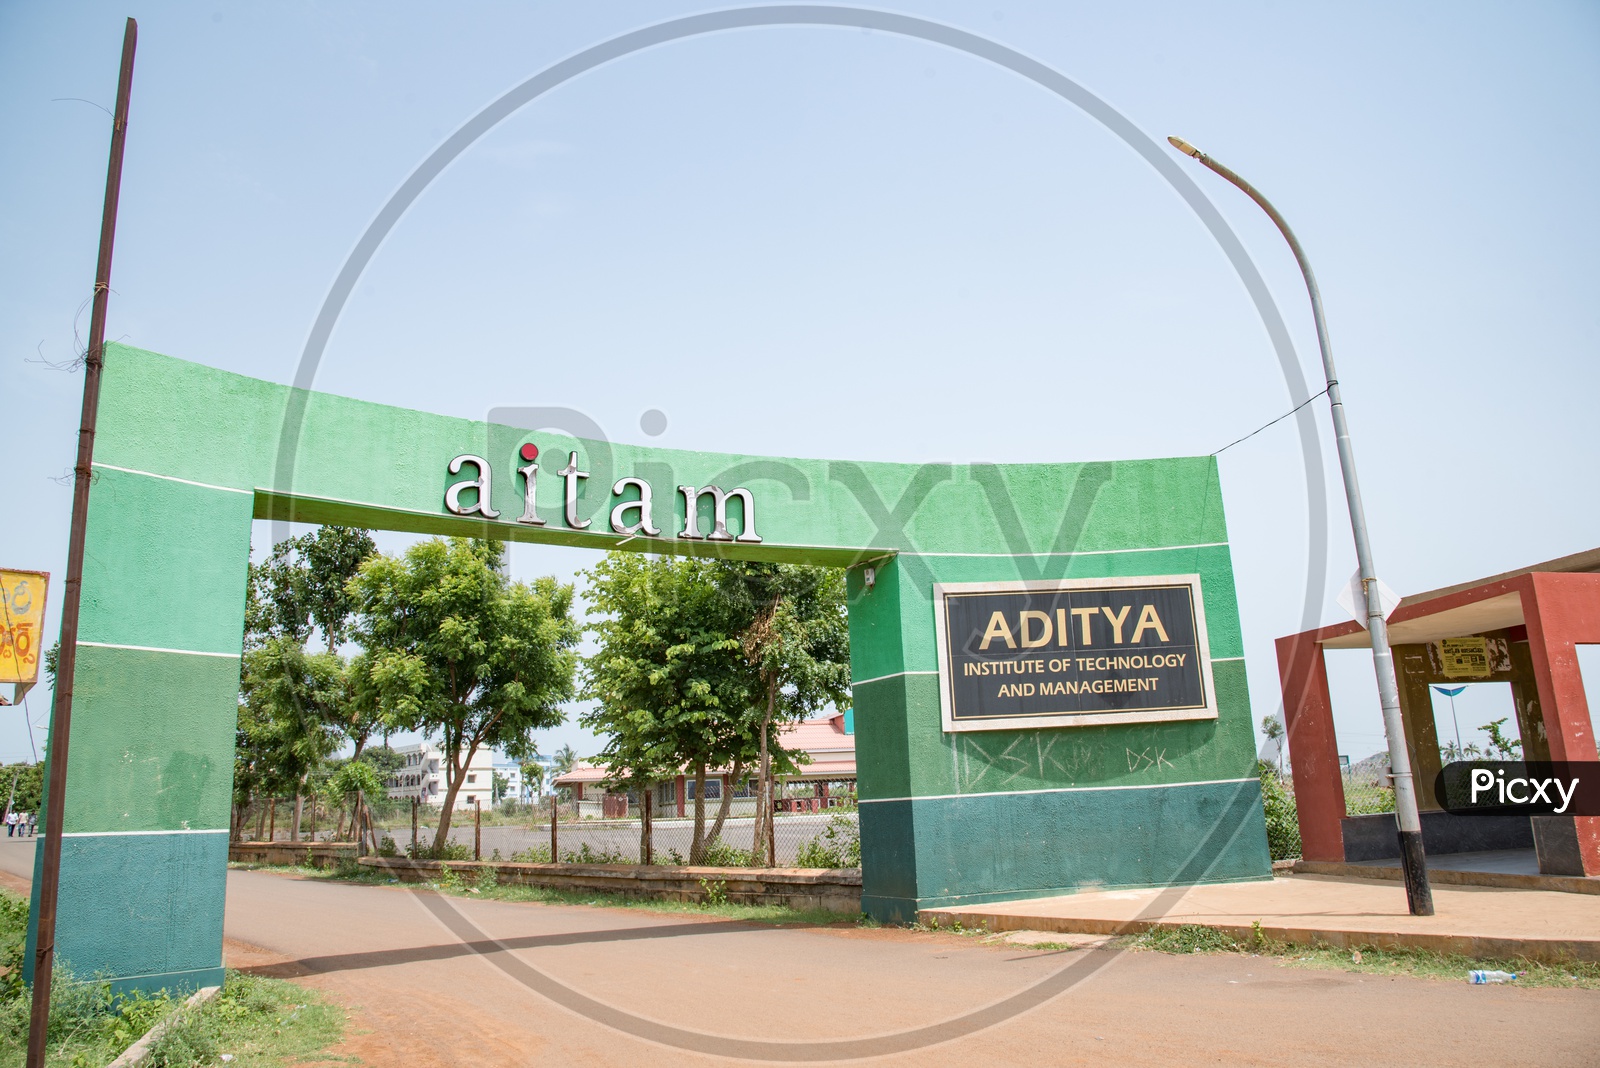 Aditya Institute of Technology and management, Srikakulam.